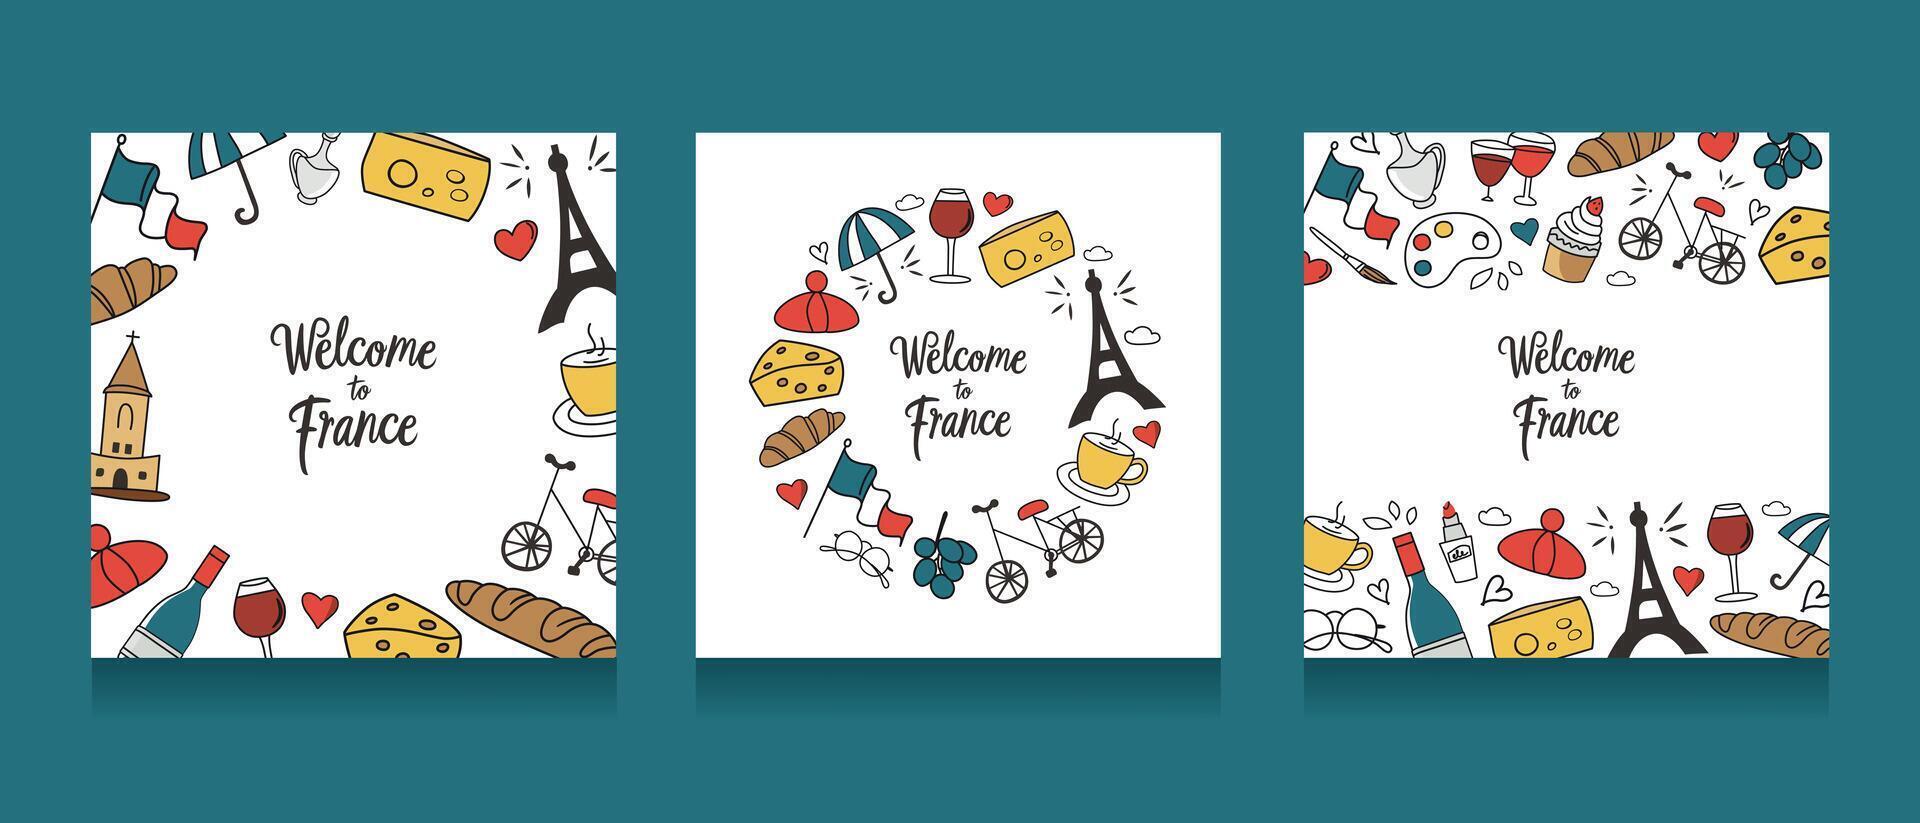 Välkommen till Frankrike kort, franska symboler arrangemang, croissant, eifel torn ikoner, layout av klotter illustrationer för skriva ut, affisch eller baner, mallar med text, paris vykort uppsättning vektor